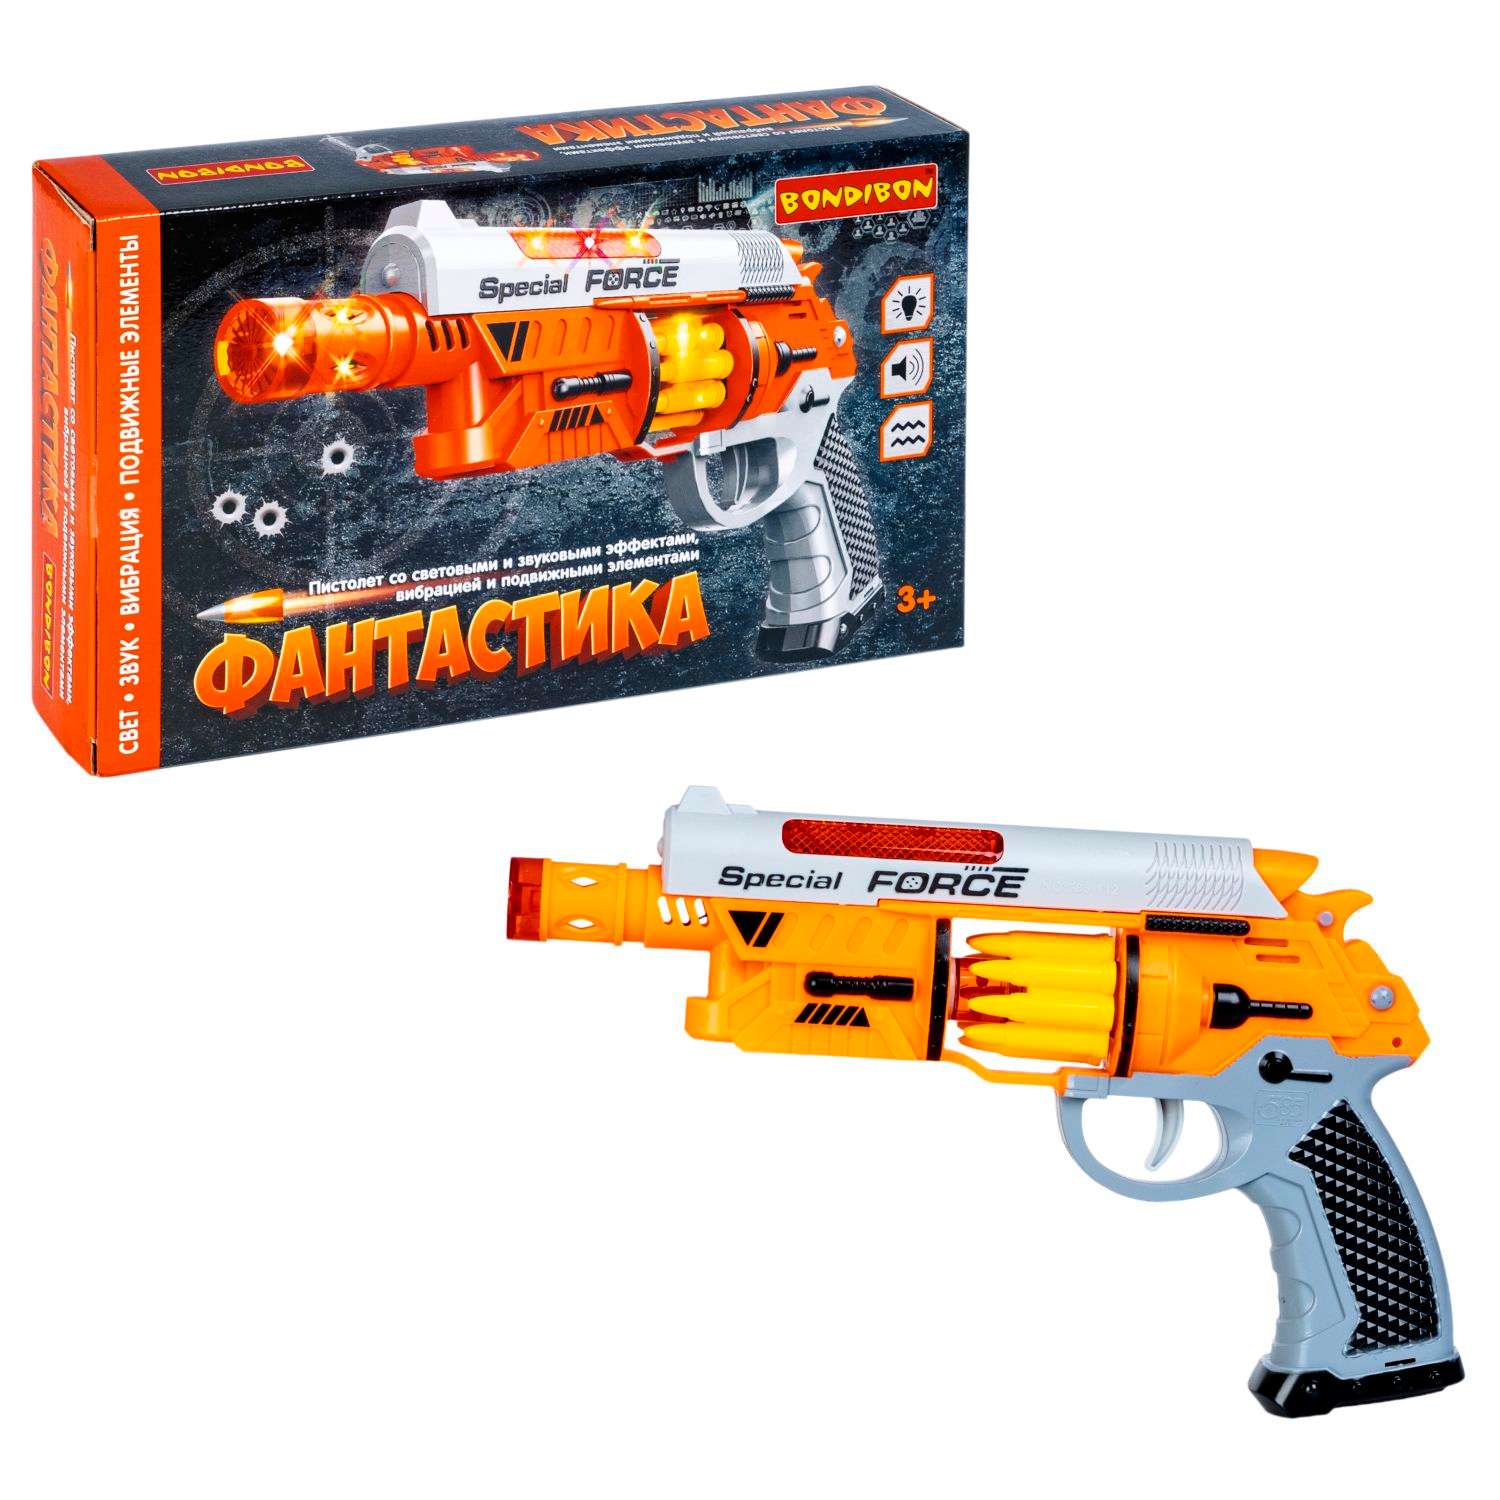 Пистолет BONDIBON Фантастика со свето-звуковым эффектом и подвижными элементами серебристо-оранжевого цвета - фото 5